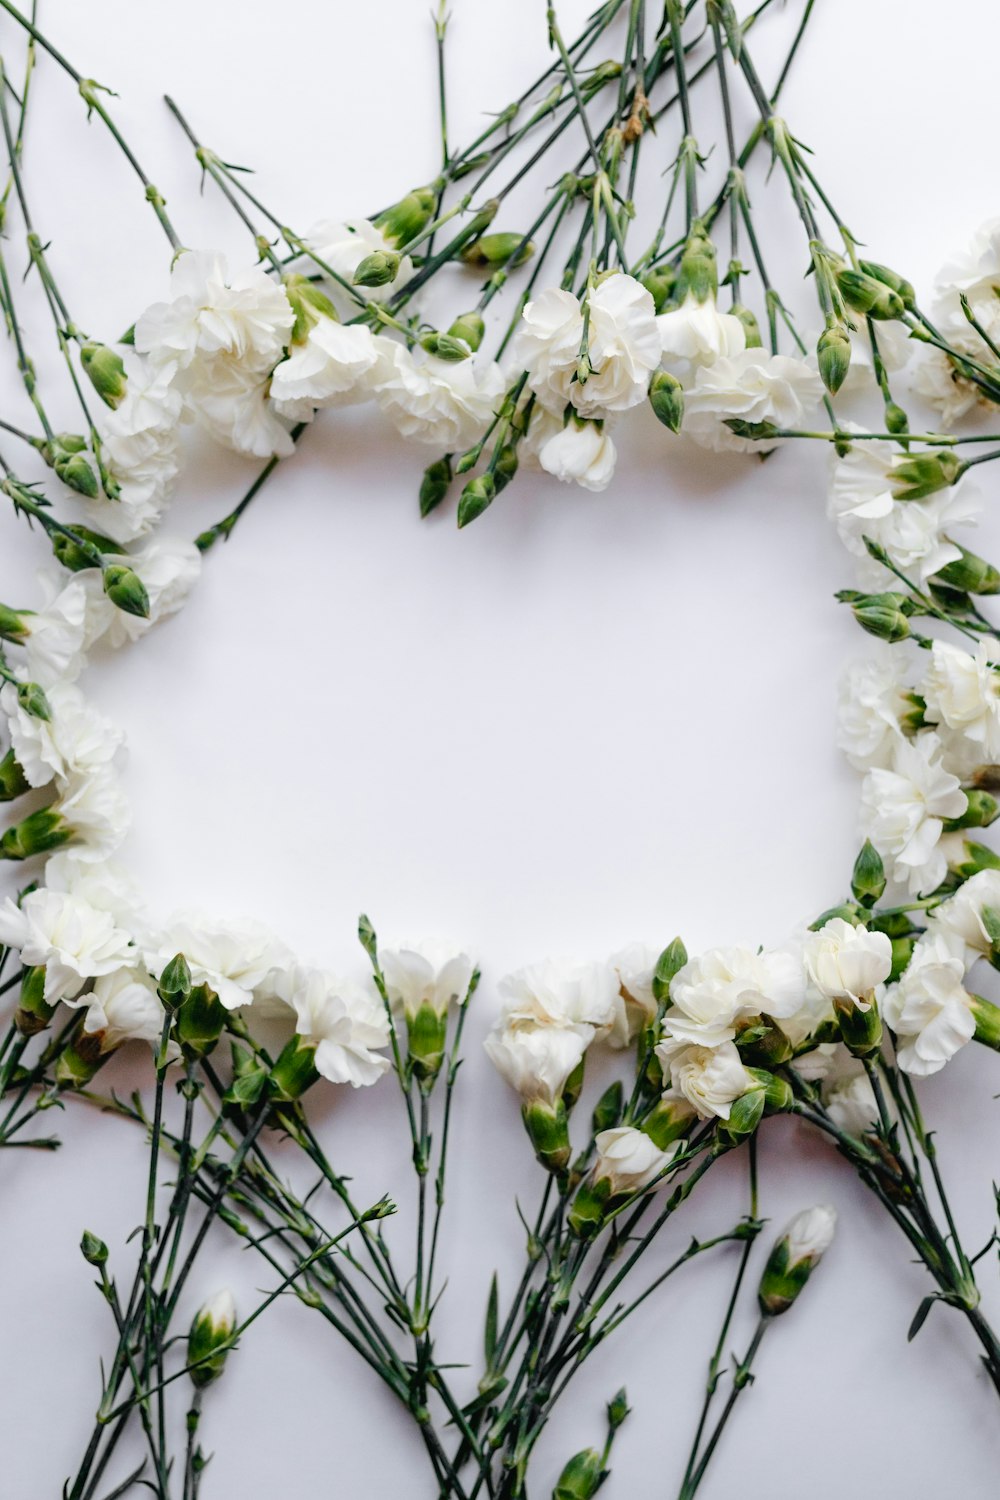 fiori dai petali bianchi che formano oblunghi